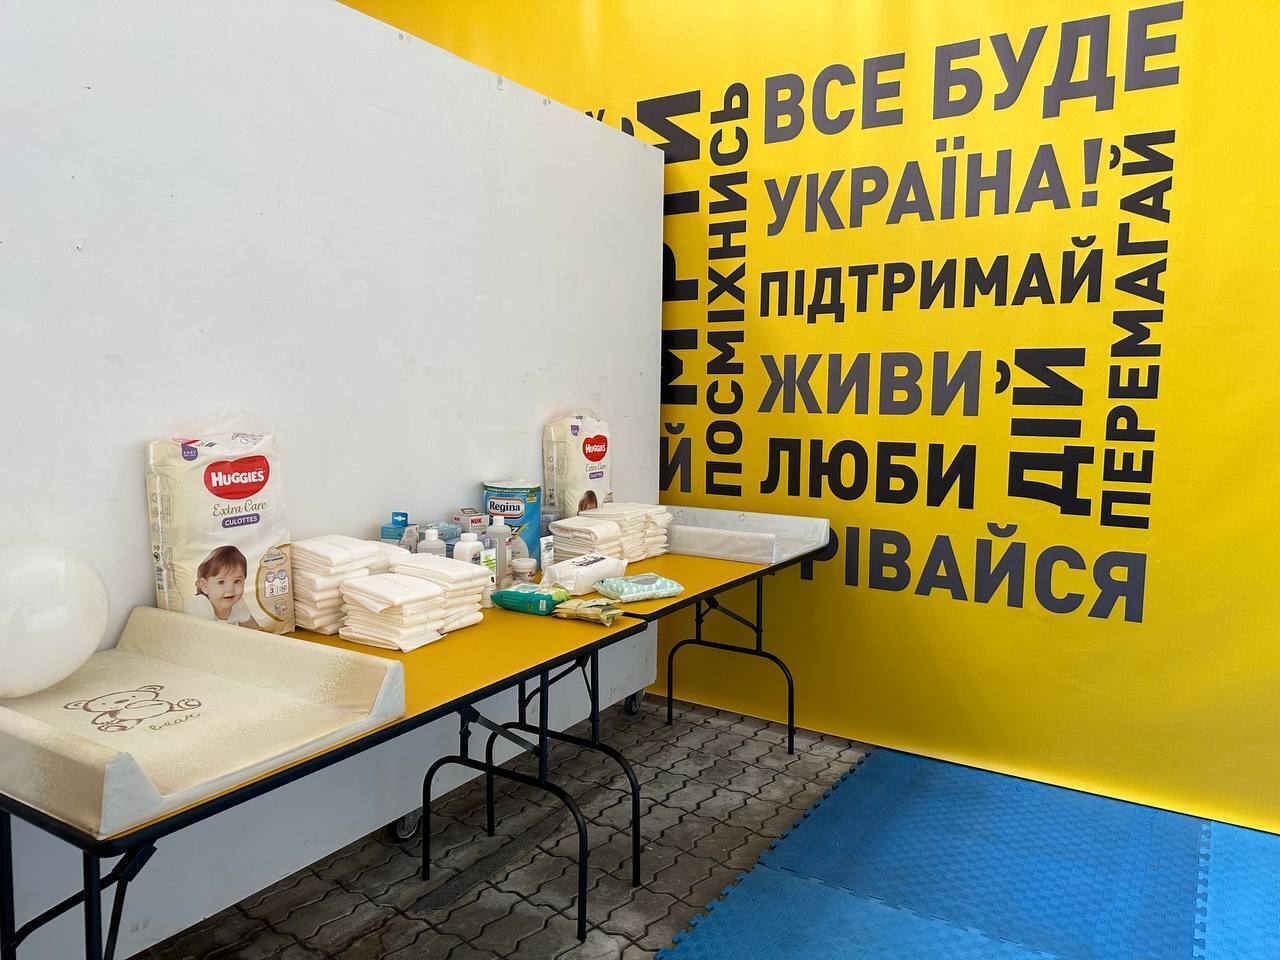 В Киеве заработал "городок несокрушимости", где можно согреться, зарядить гаджеты и провести время с детьми. Фото